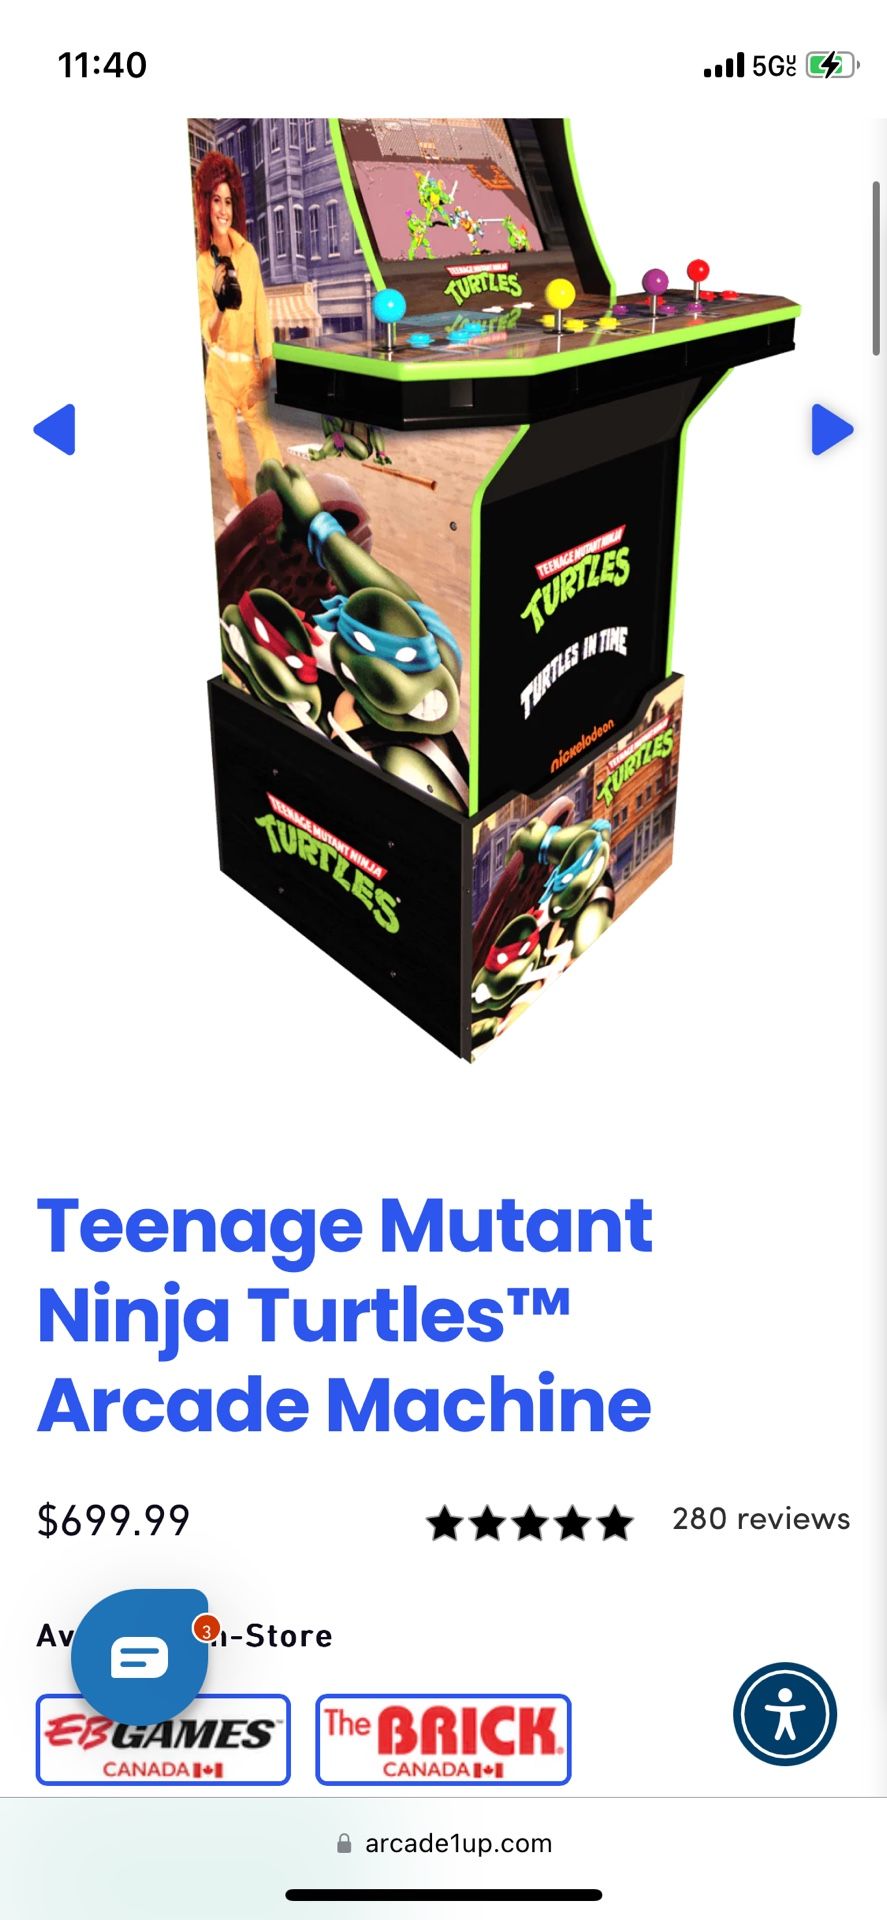 1up Arcade Teenage Mutant Ninja Turtles 2 In 1 Game. Turtles In Time & TMNT Arcade (Brand New, In Box) $300